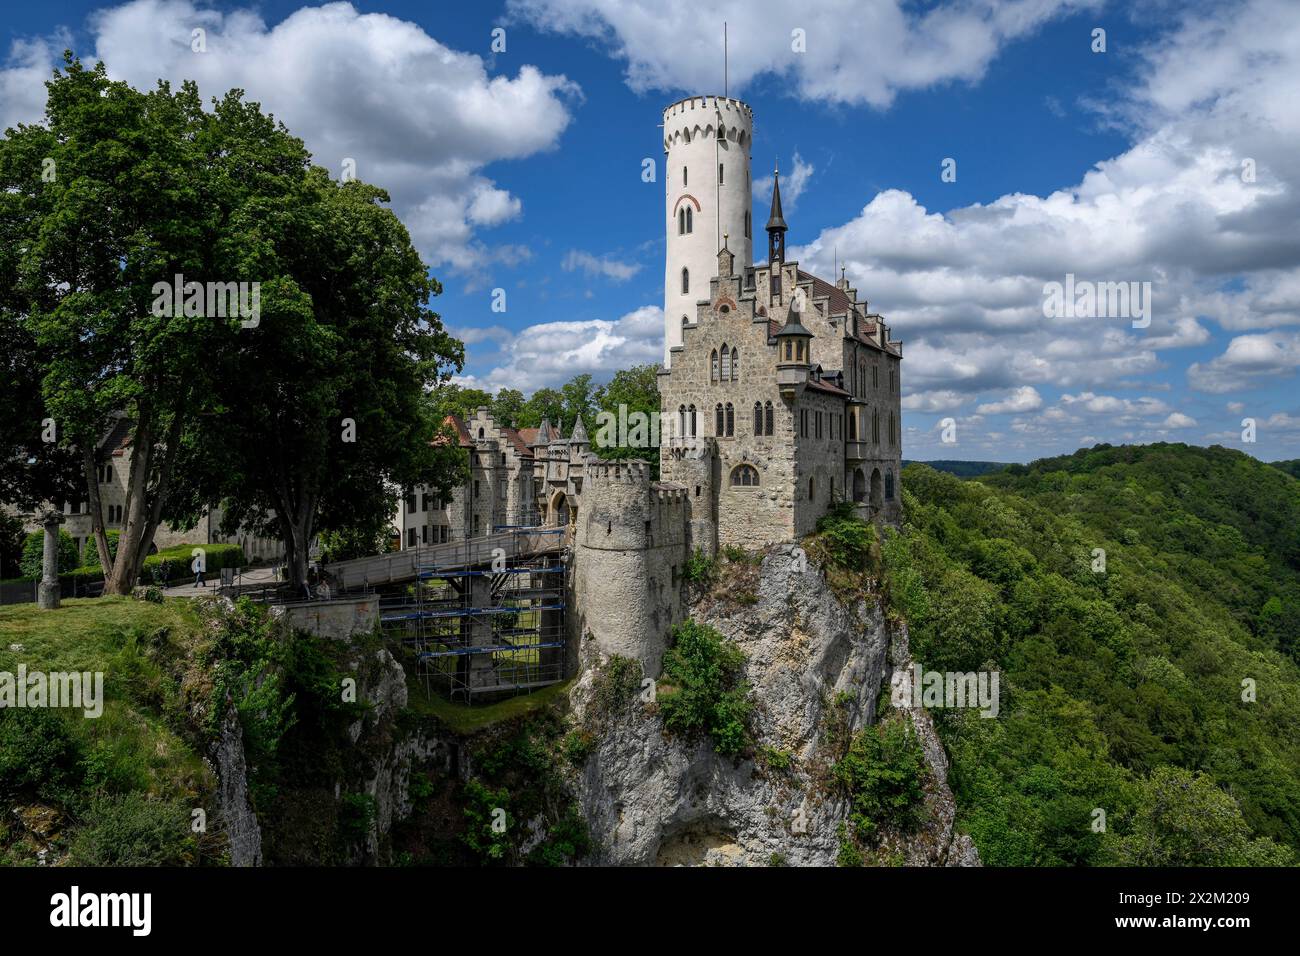 Géographie / voyage, Allemagne, Bade-Wuerttemberg, Château du Lichtenstein, château de conte de fées Wuerttemberg, INFORMATIONS-AUTORISATION-DROITS-SUPPLÉMENTAIRES-NON-DISPONIBLES Banque D'Images